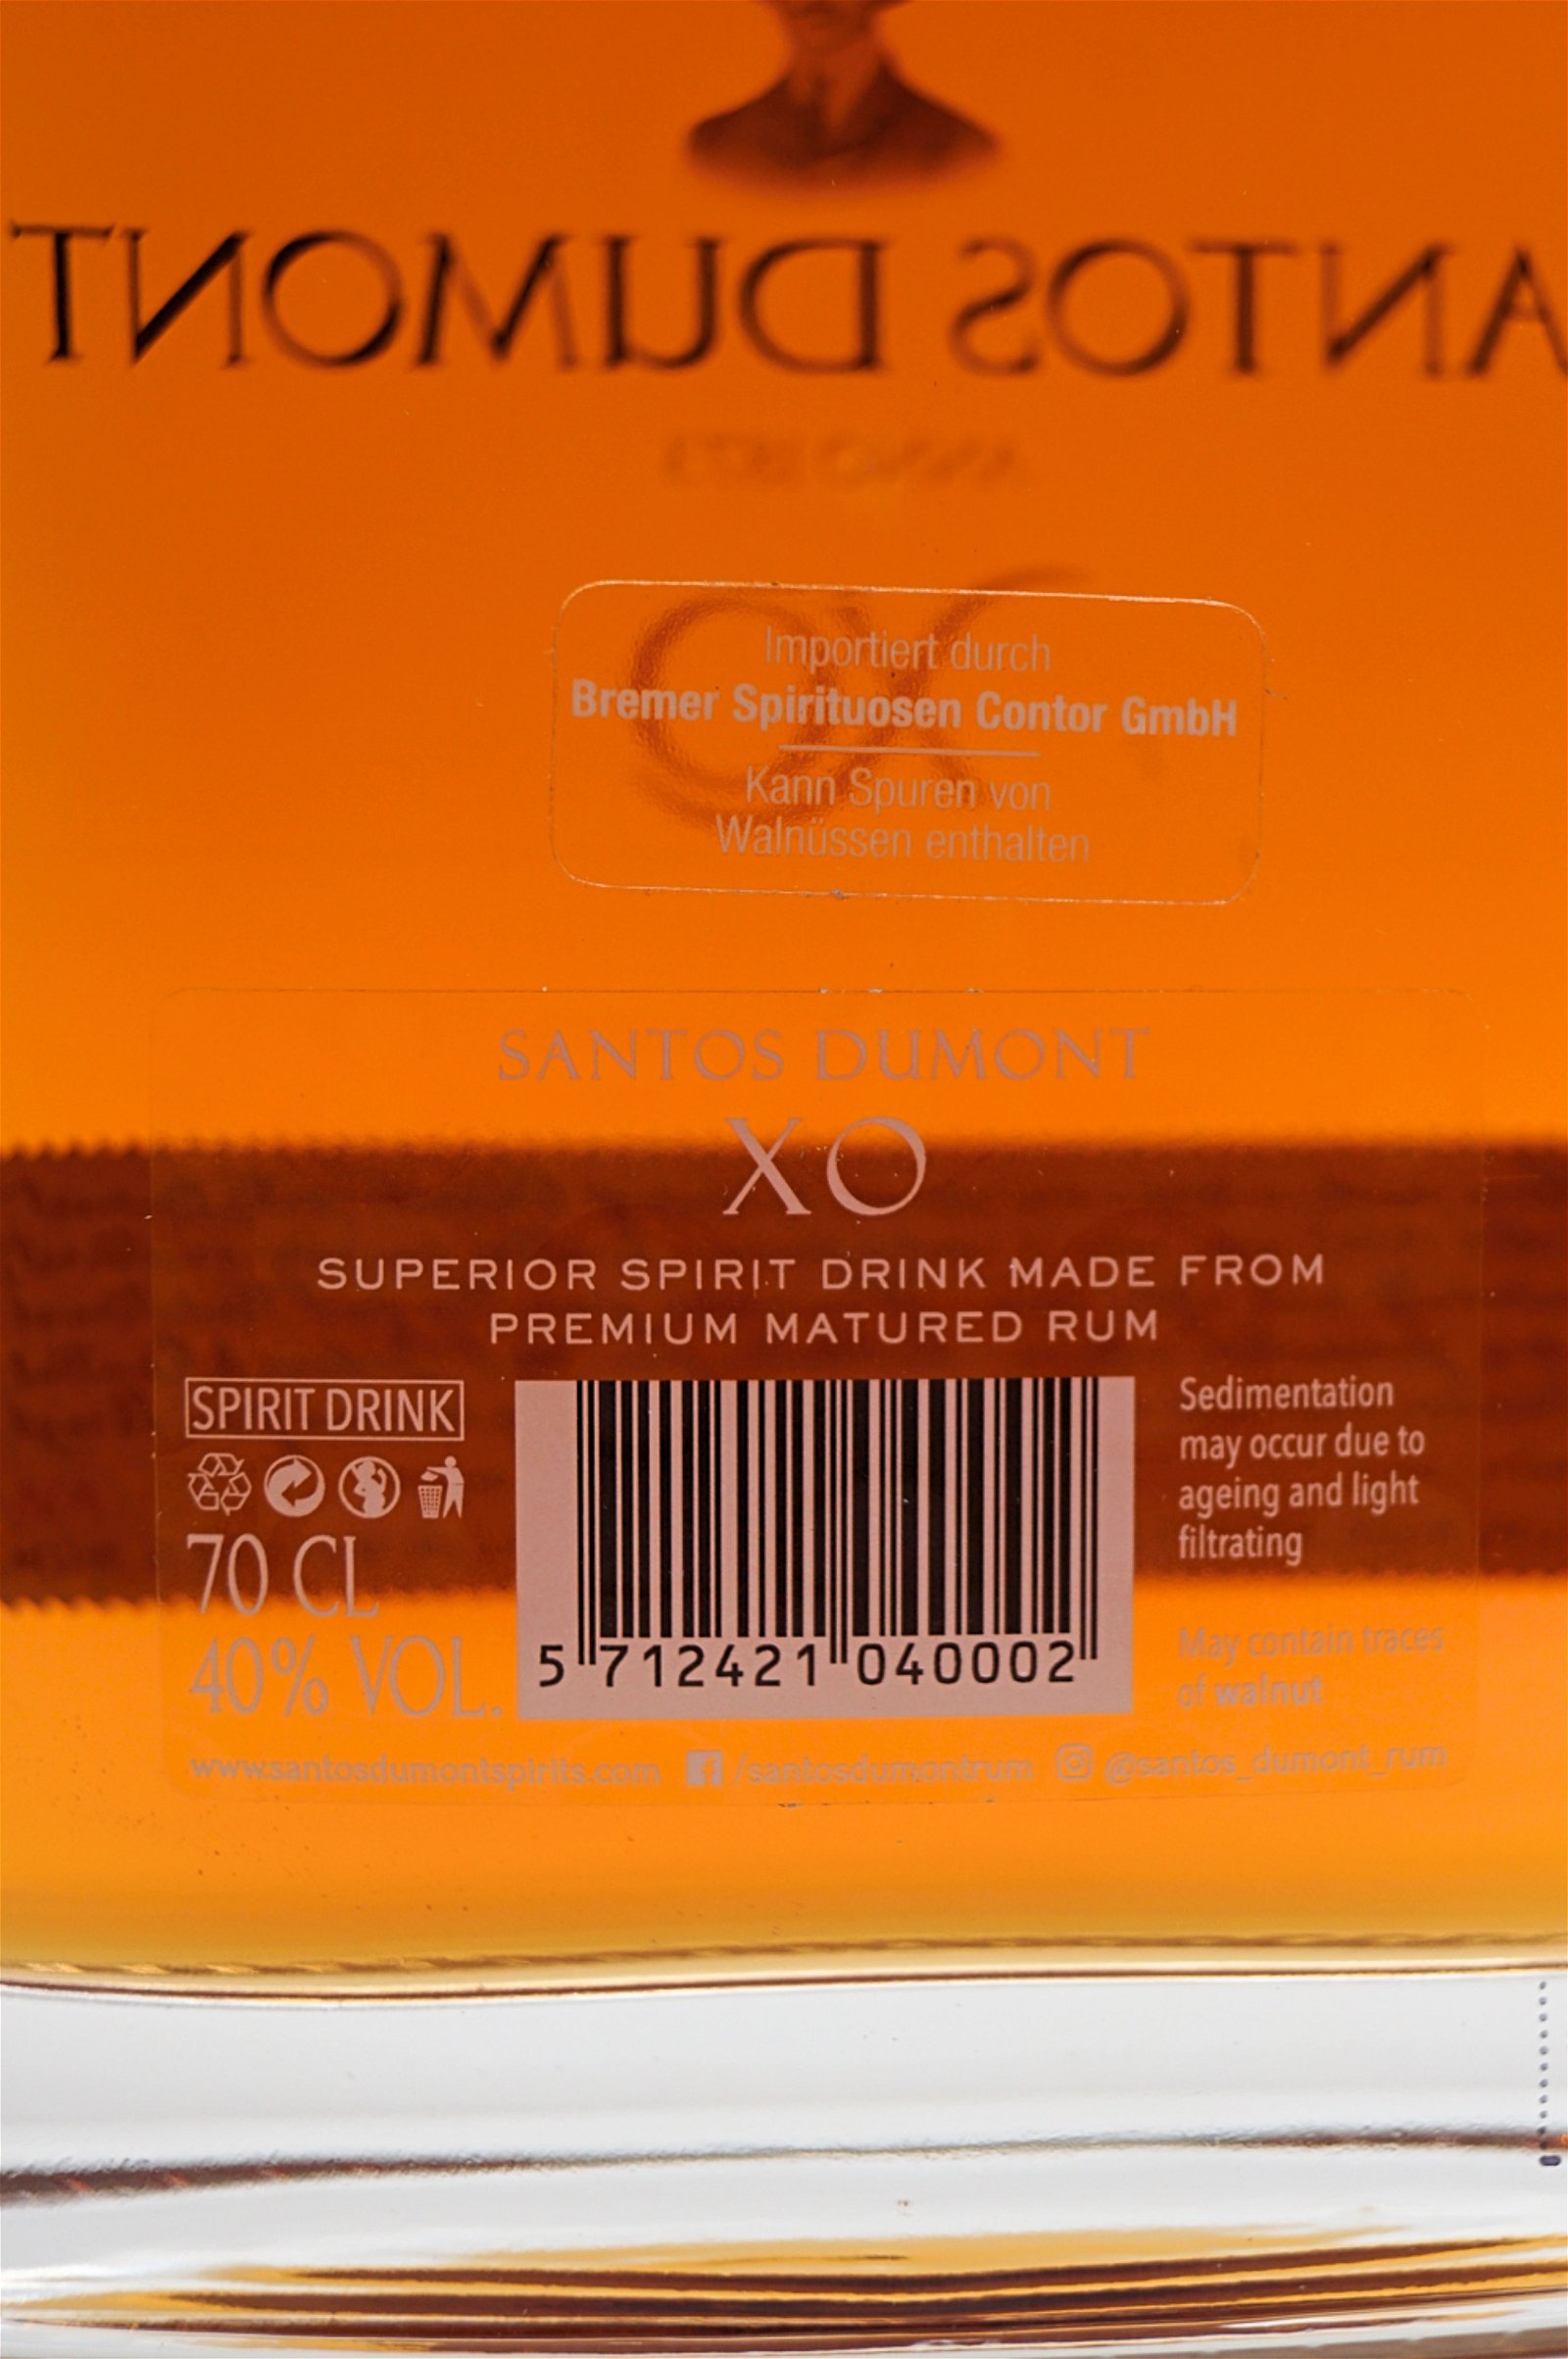 Santos Dumont XO Super Premium Rum